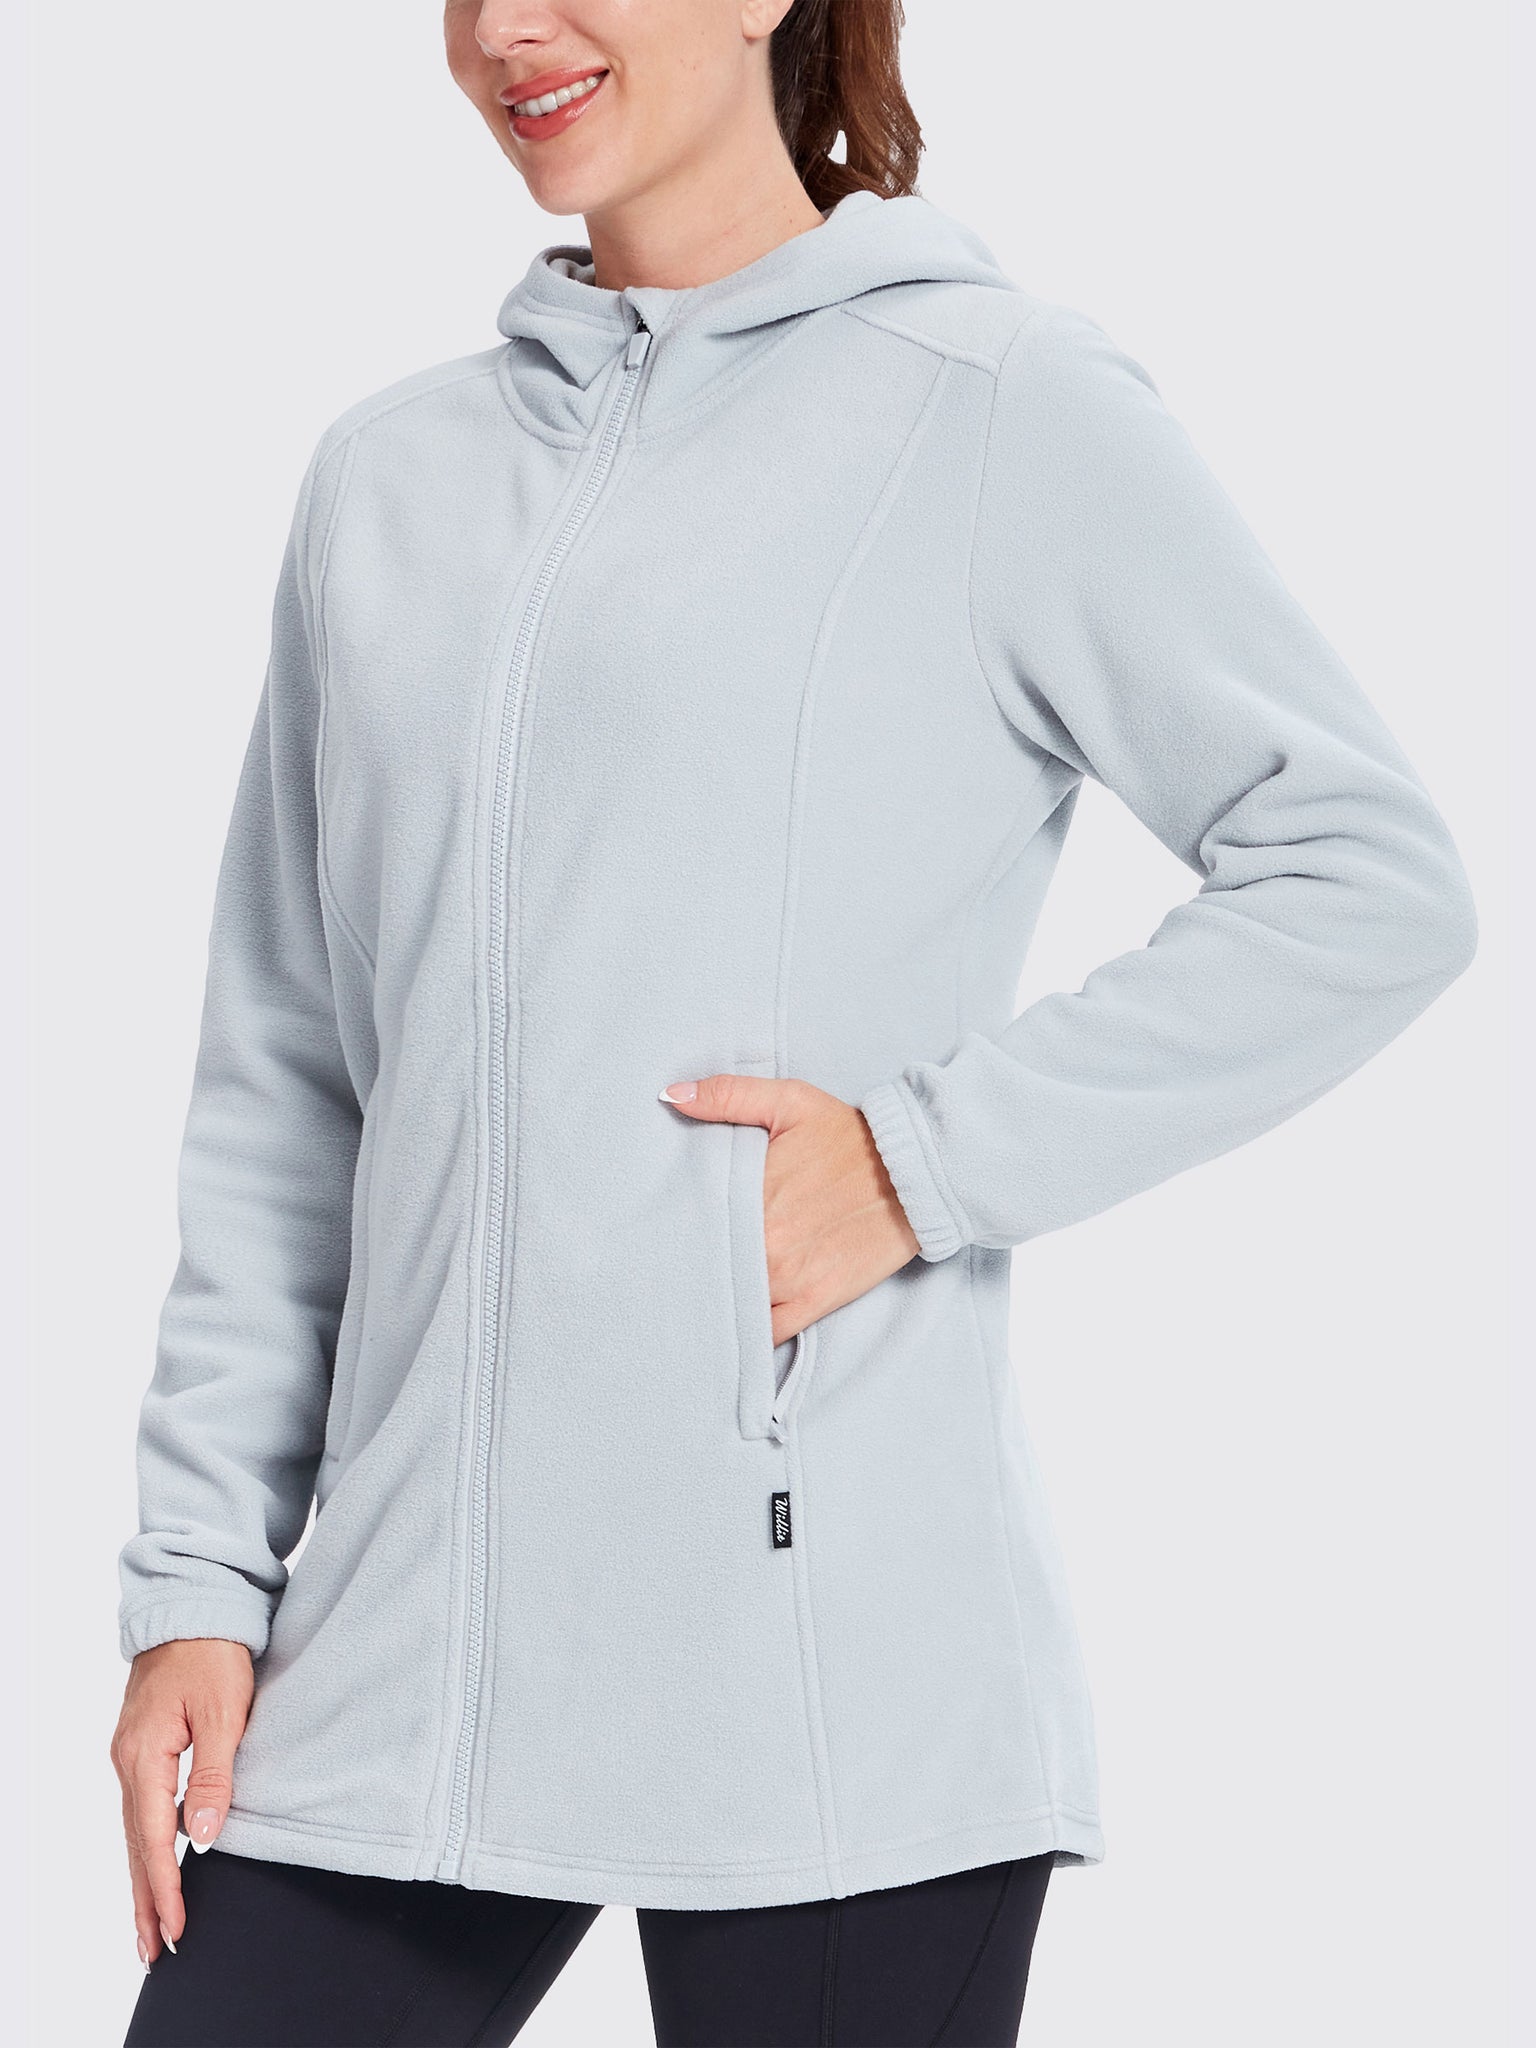 Women's Fleece Full-Zip Jacket Gray1